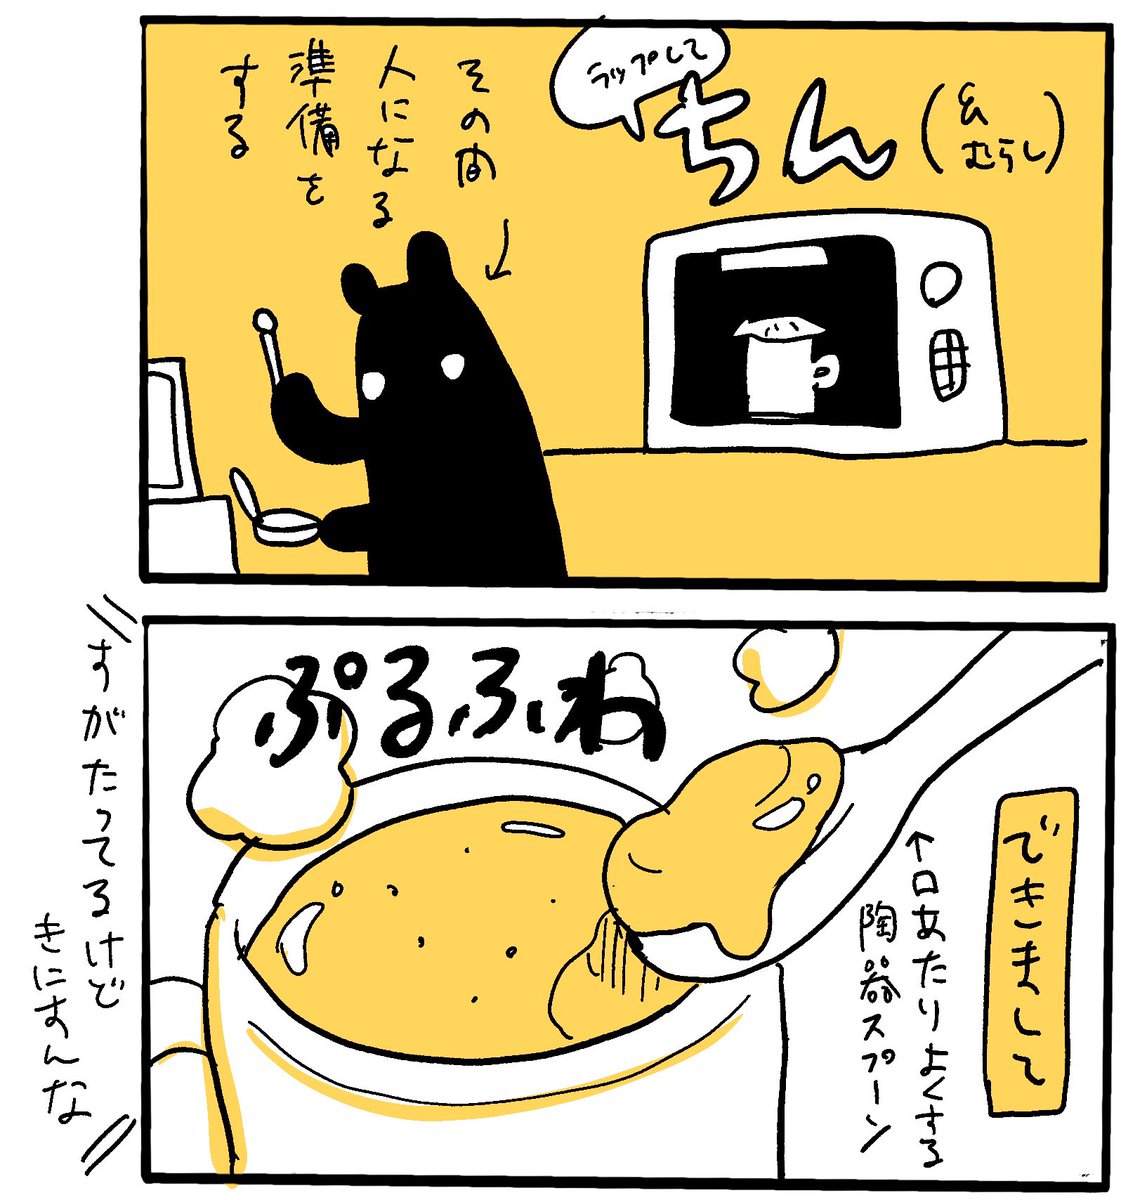 朝食にはチーズ入り茶碗蒸しが最高という漫画です

#漫画が読めるハッシュタグ 